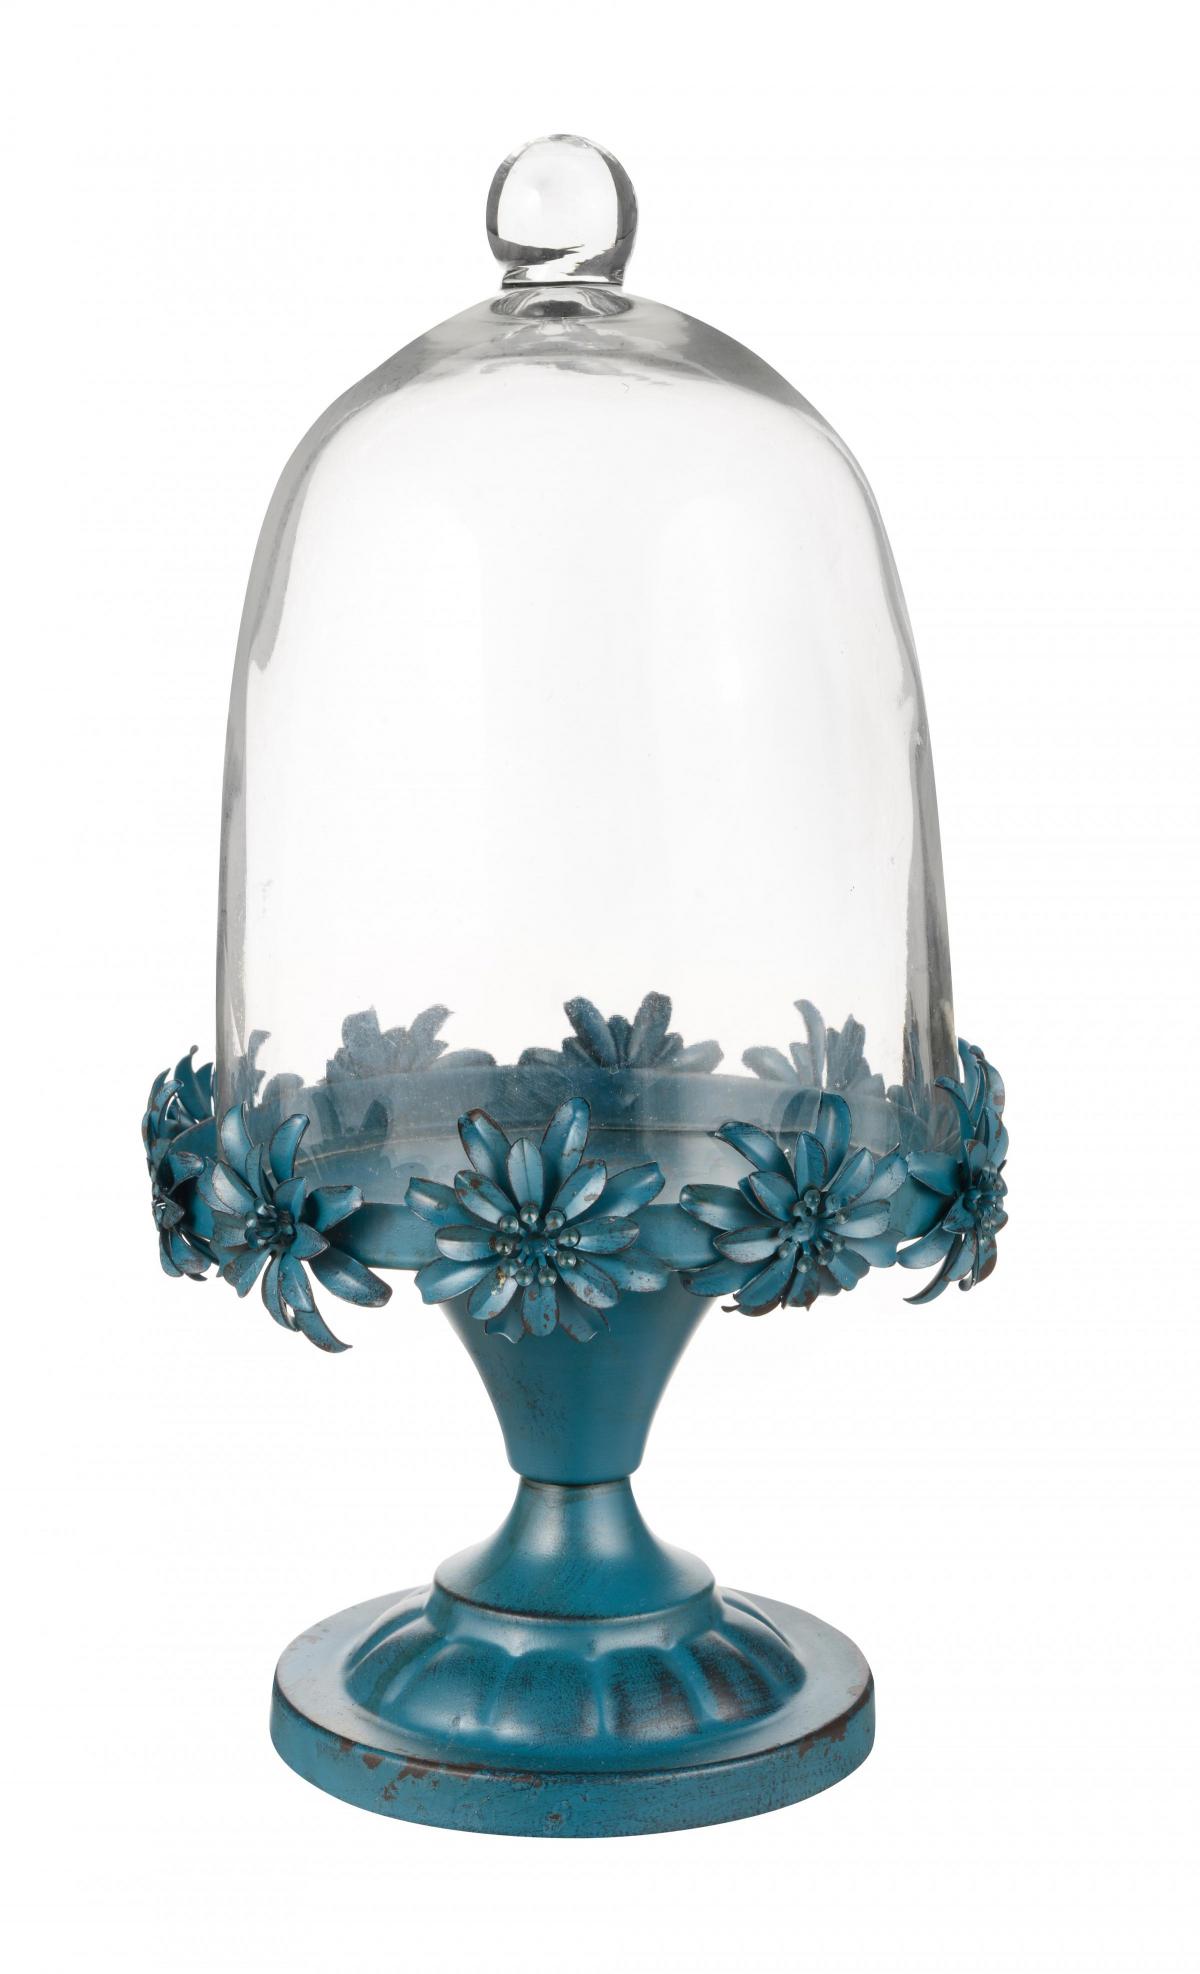 BHS, blue floral 
bell jar, £15